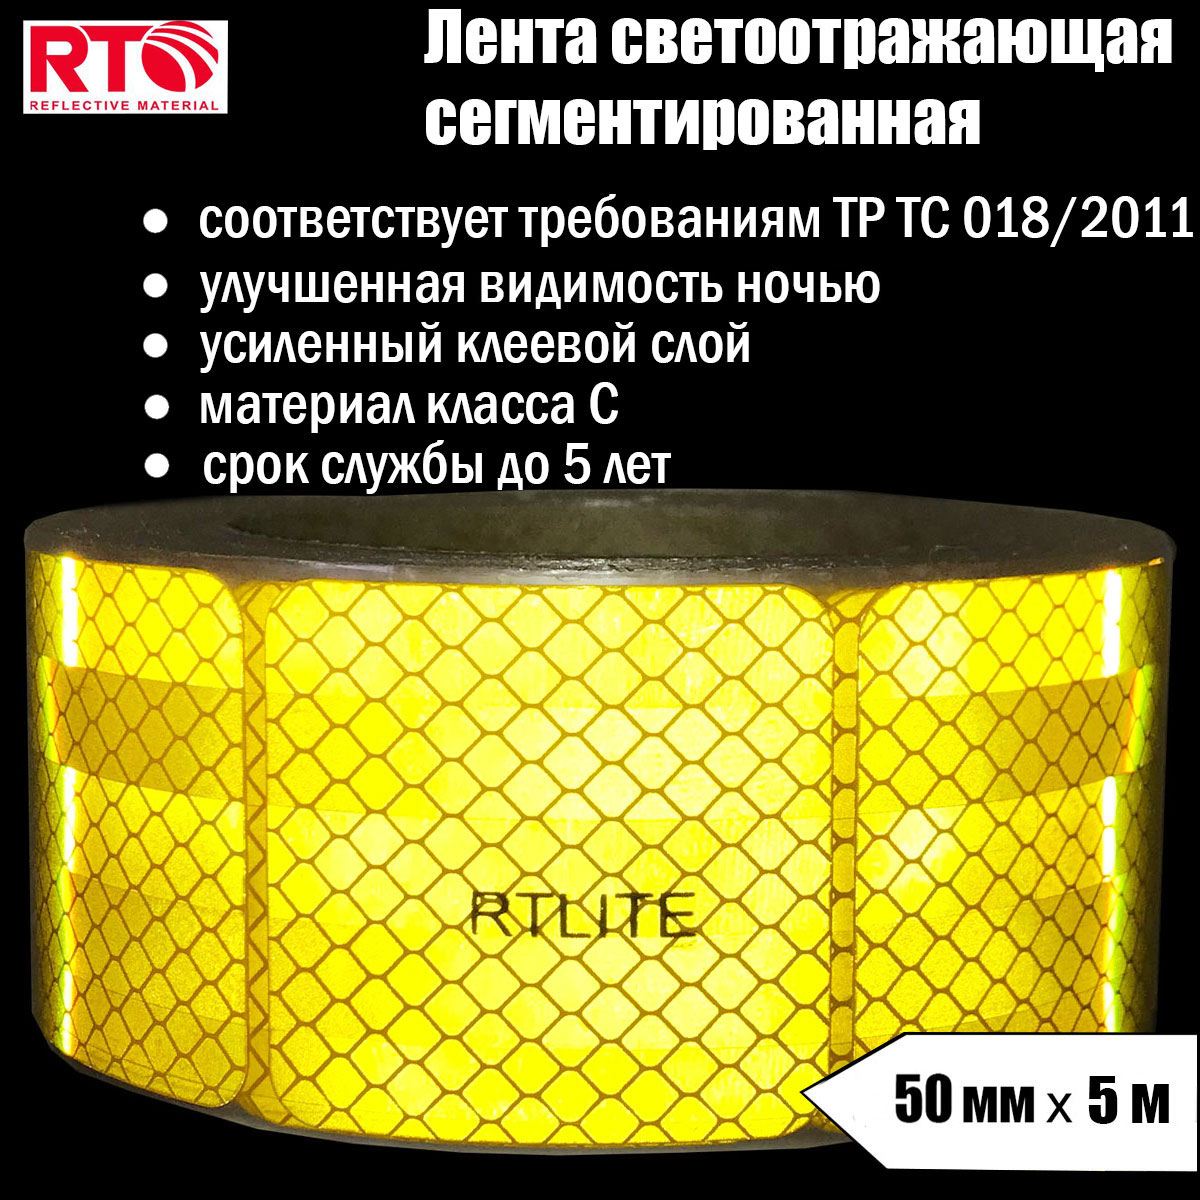 Лента светоотражающая сегментированная RTLITE RT-V104 для контурной маркировки, 50мм х 5м светоотражающая лента torso самоклеящаяся желтая 5 см х 3 м